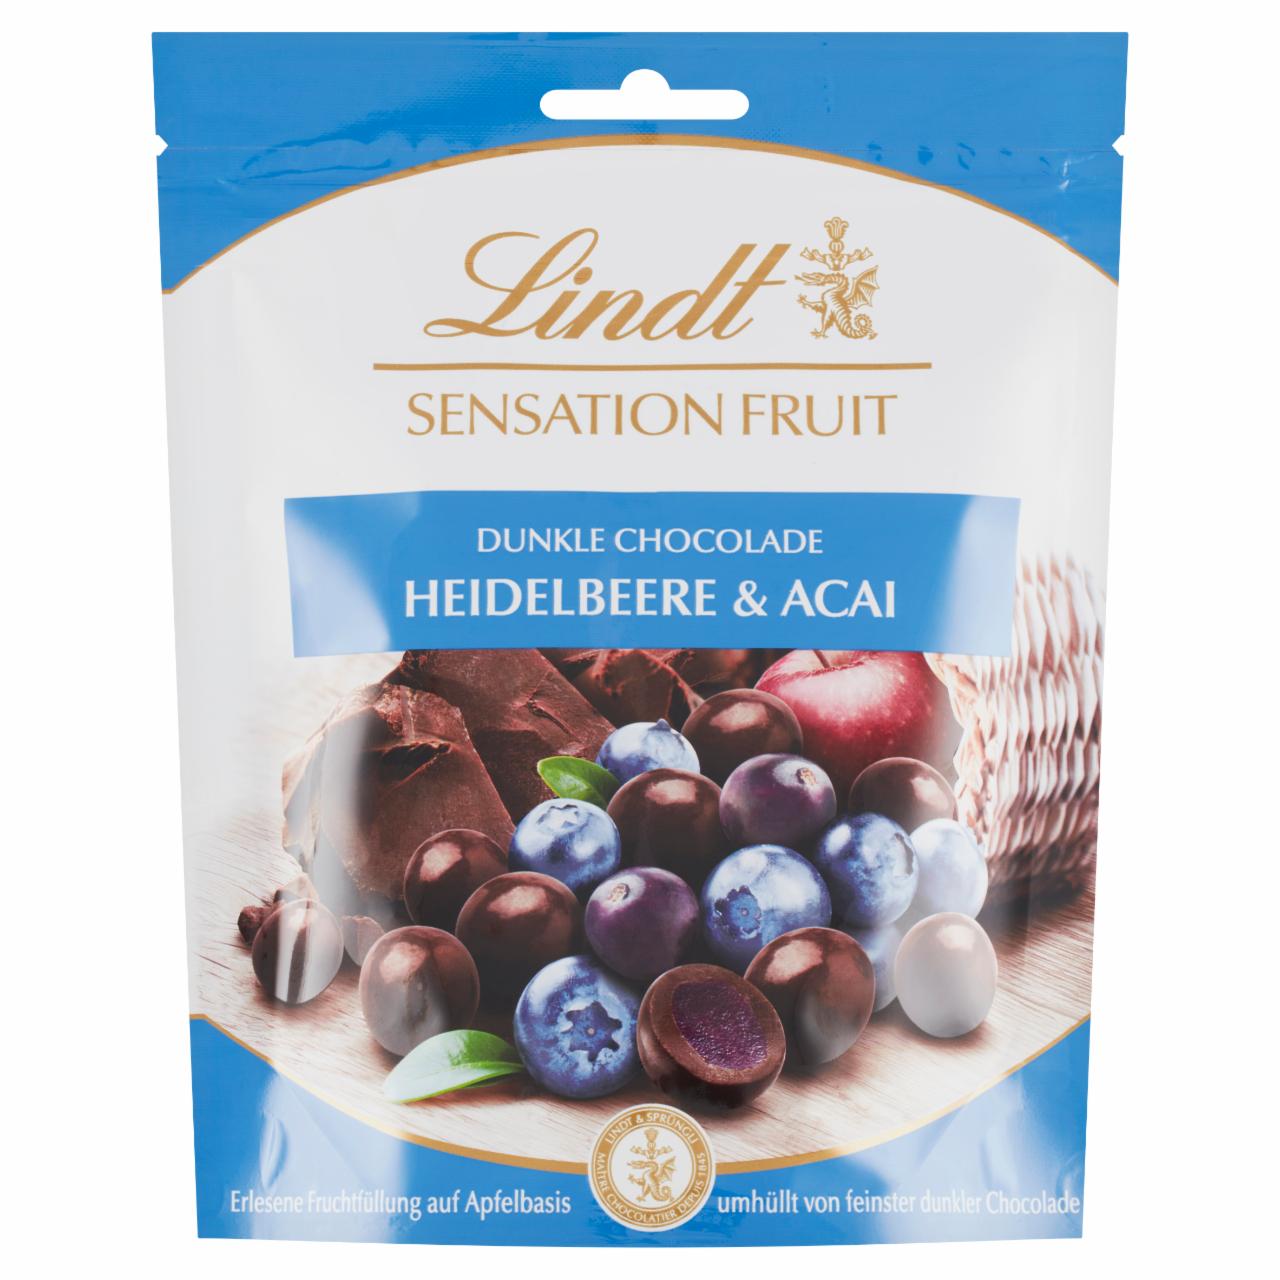 Képek - Lindt Sensation Fruit Heidelbeere & Acai gyümölcsdarabokkal töltött keserű csokoládébonbon 150 g